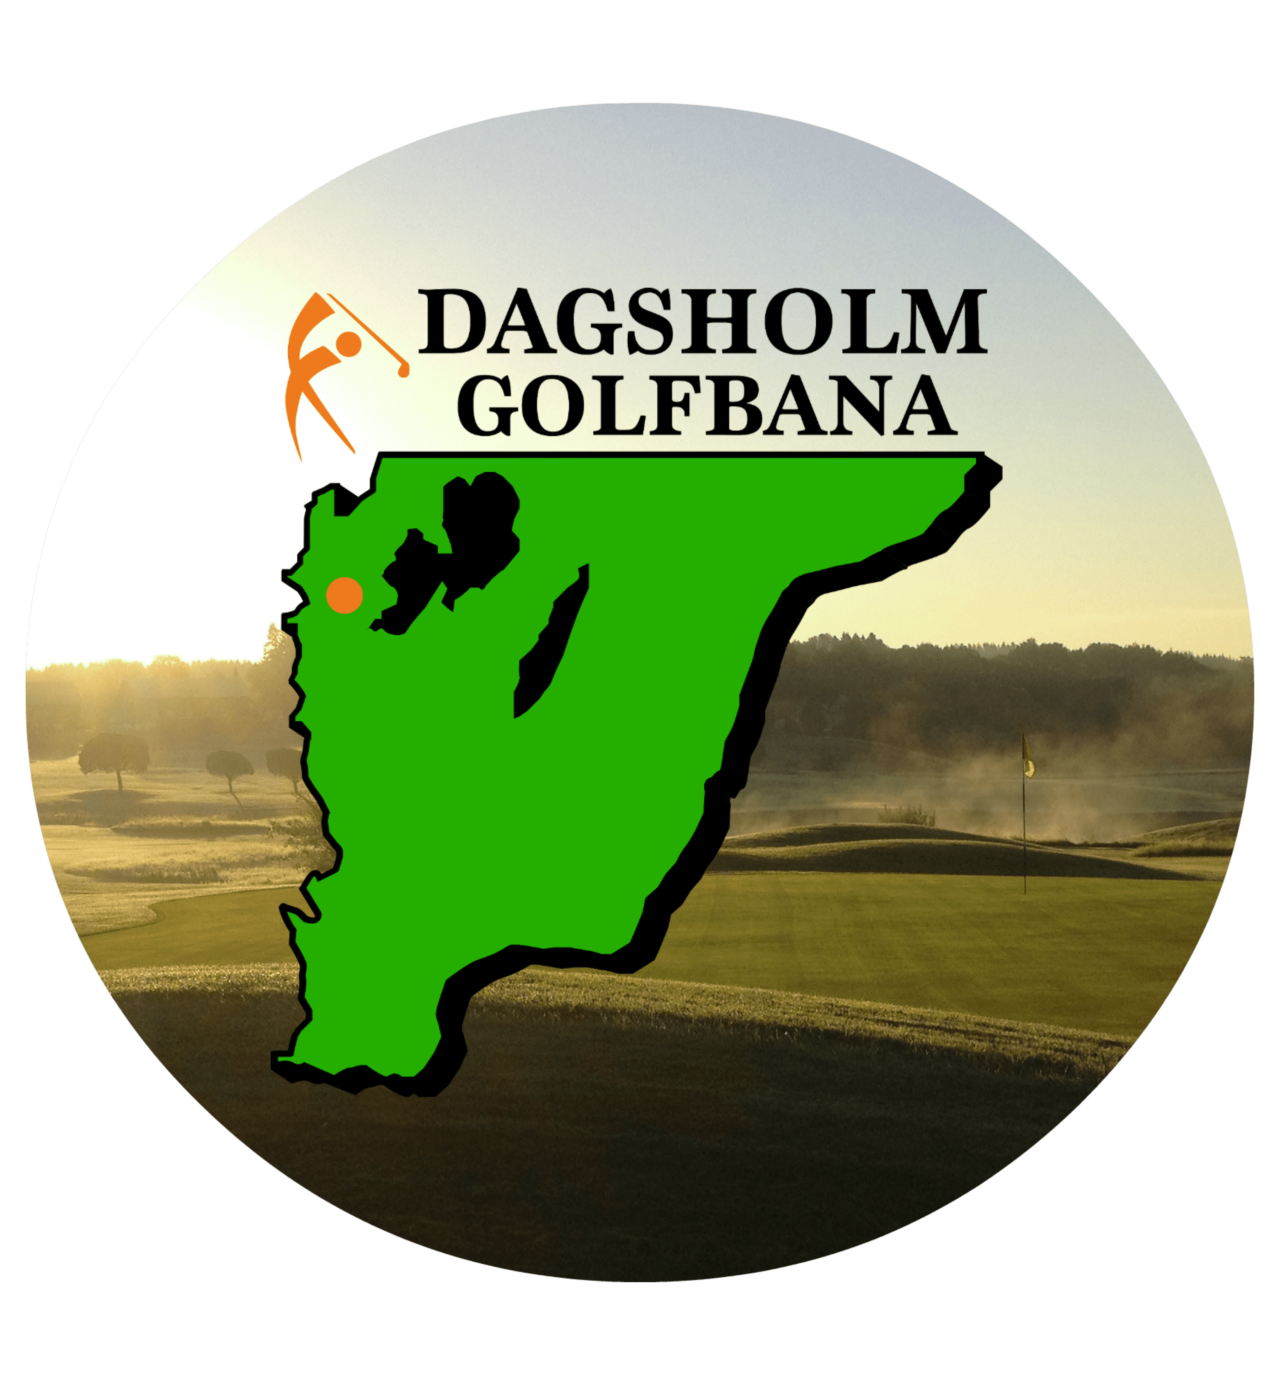 Dagsholm Golf